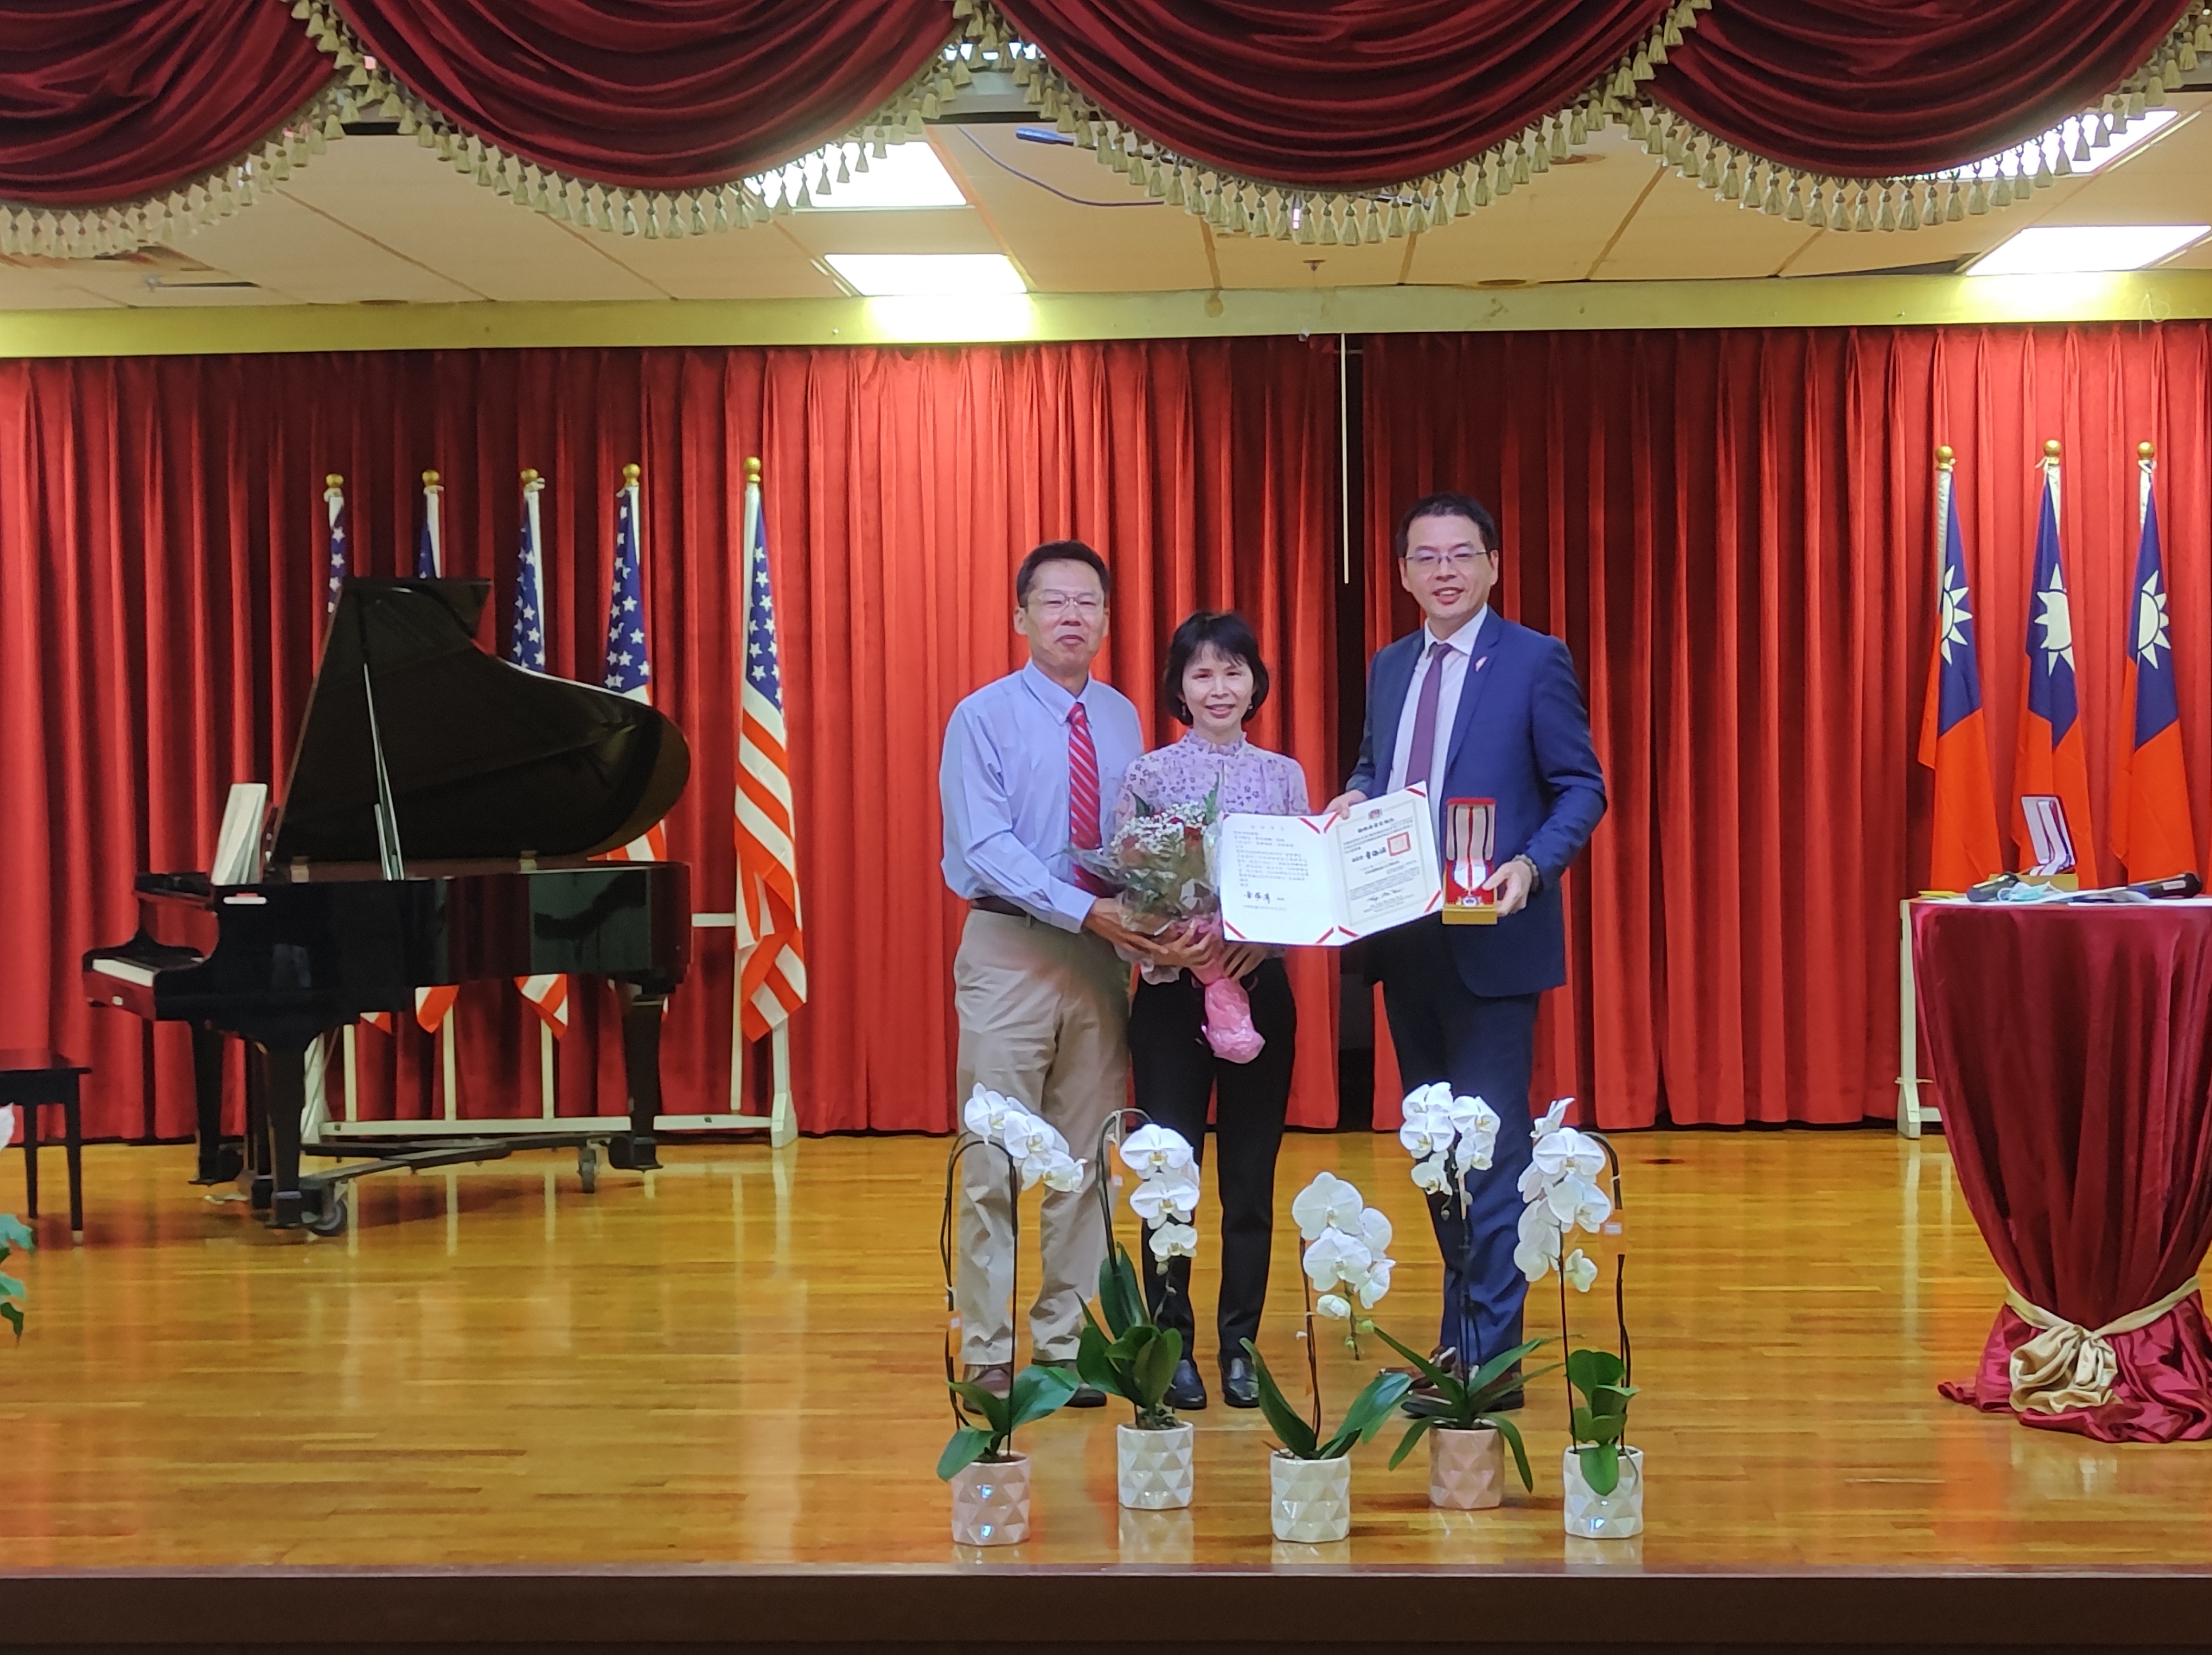 邱慧珠老師領取30年教學證書和金質獎章